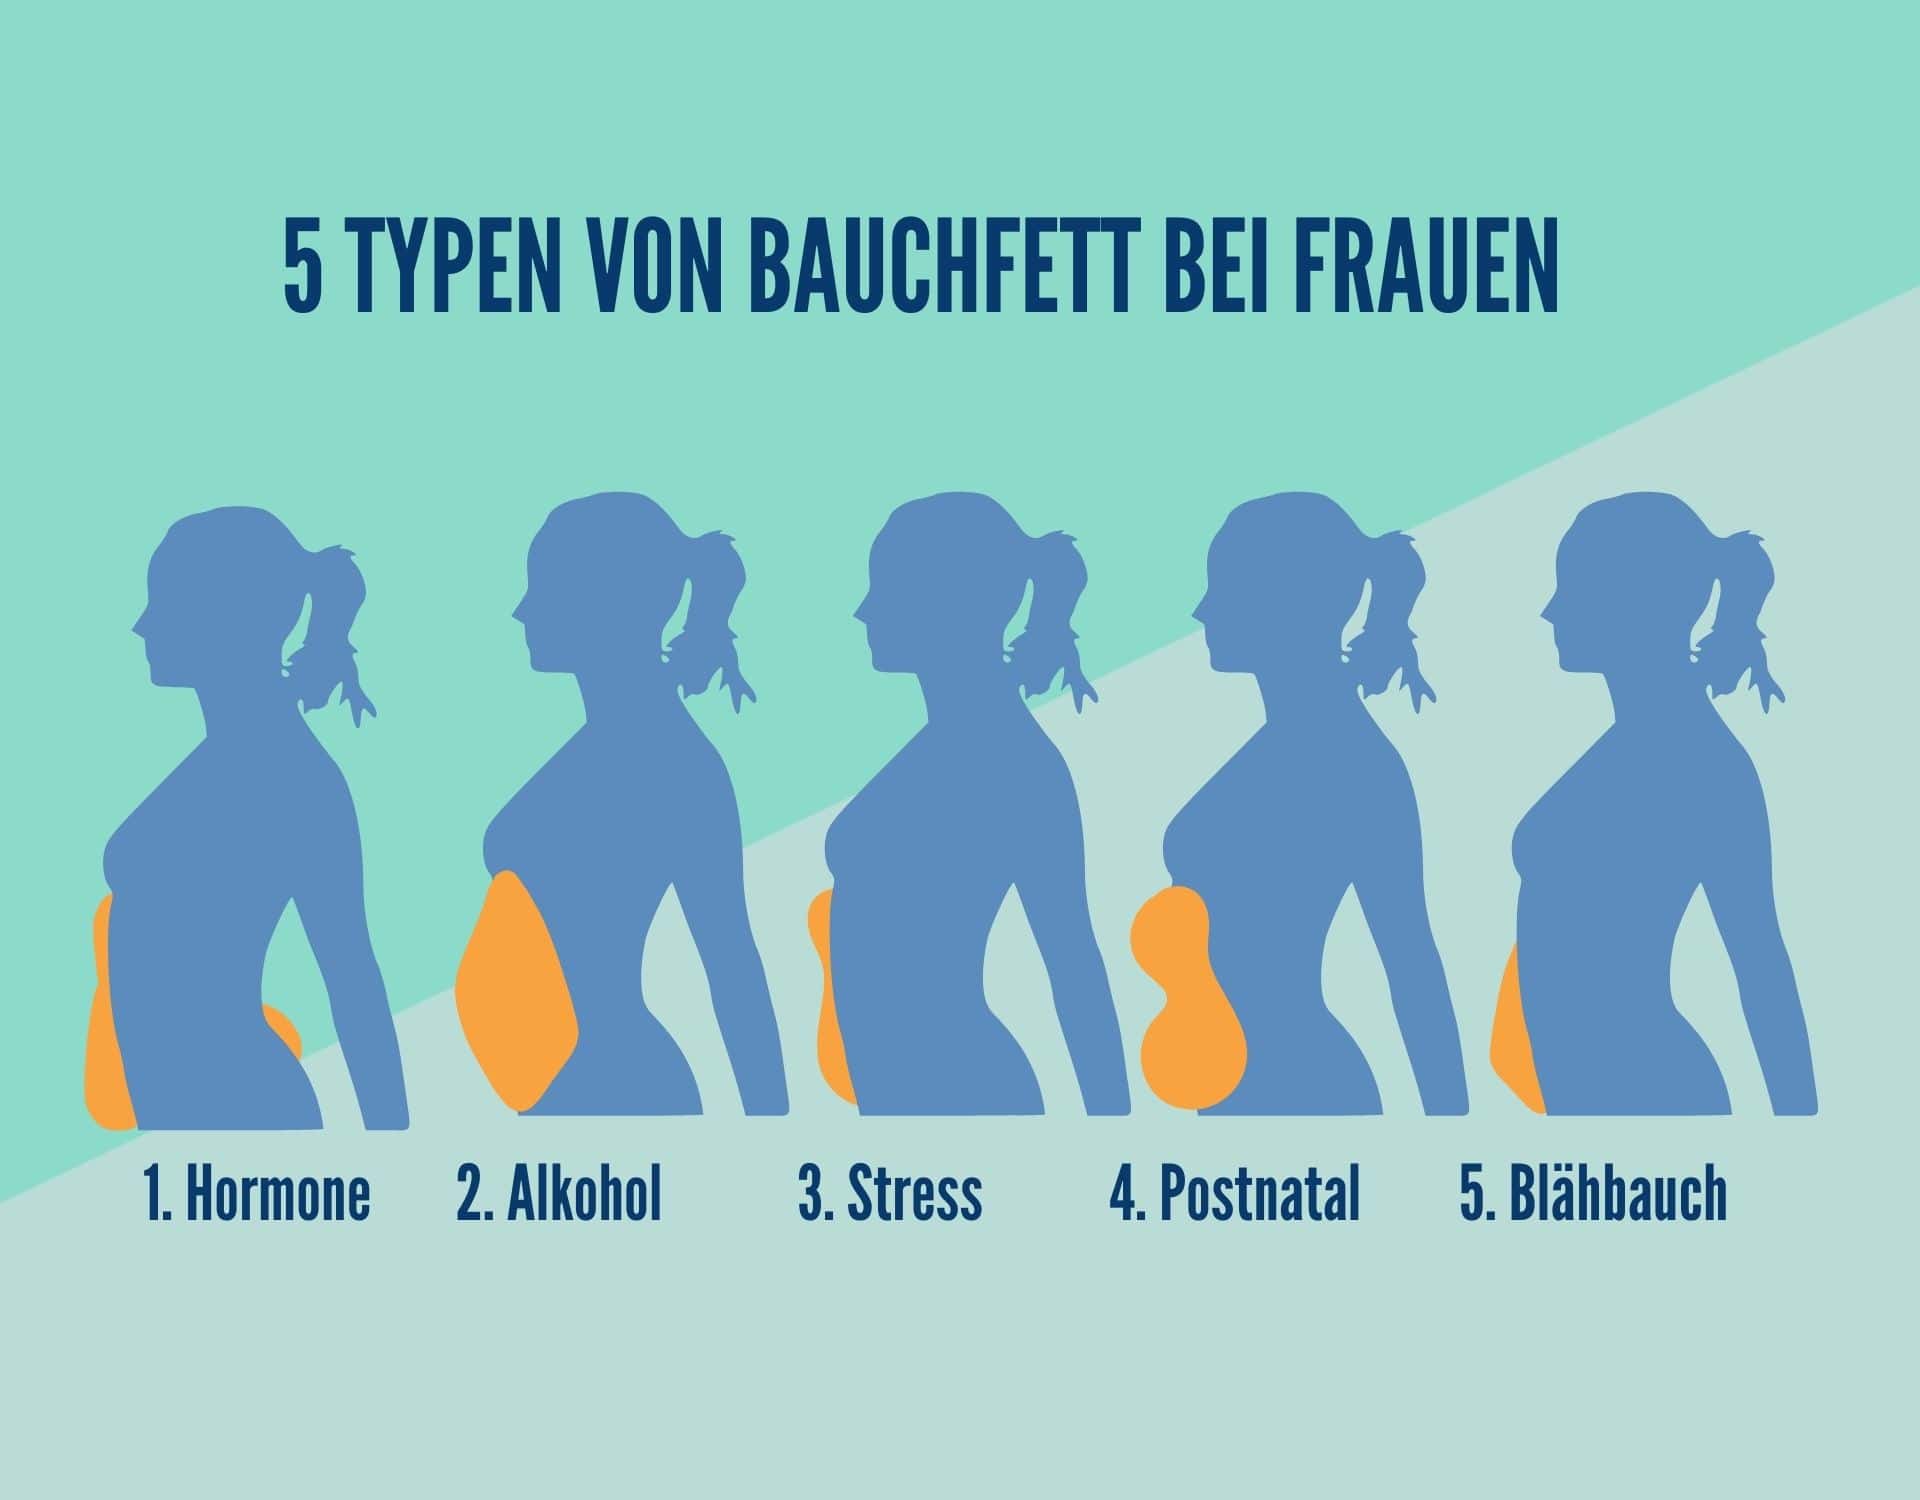 Bauchfett bei Frauen: Diese 5 Typen gibt es & so wirst du sie los - wmn...